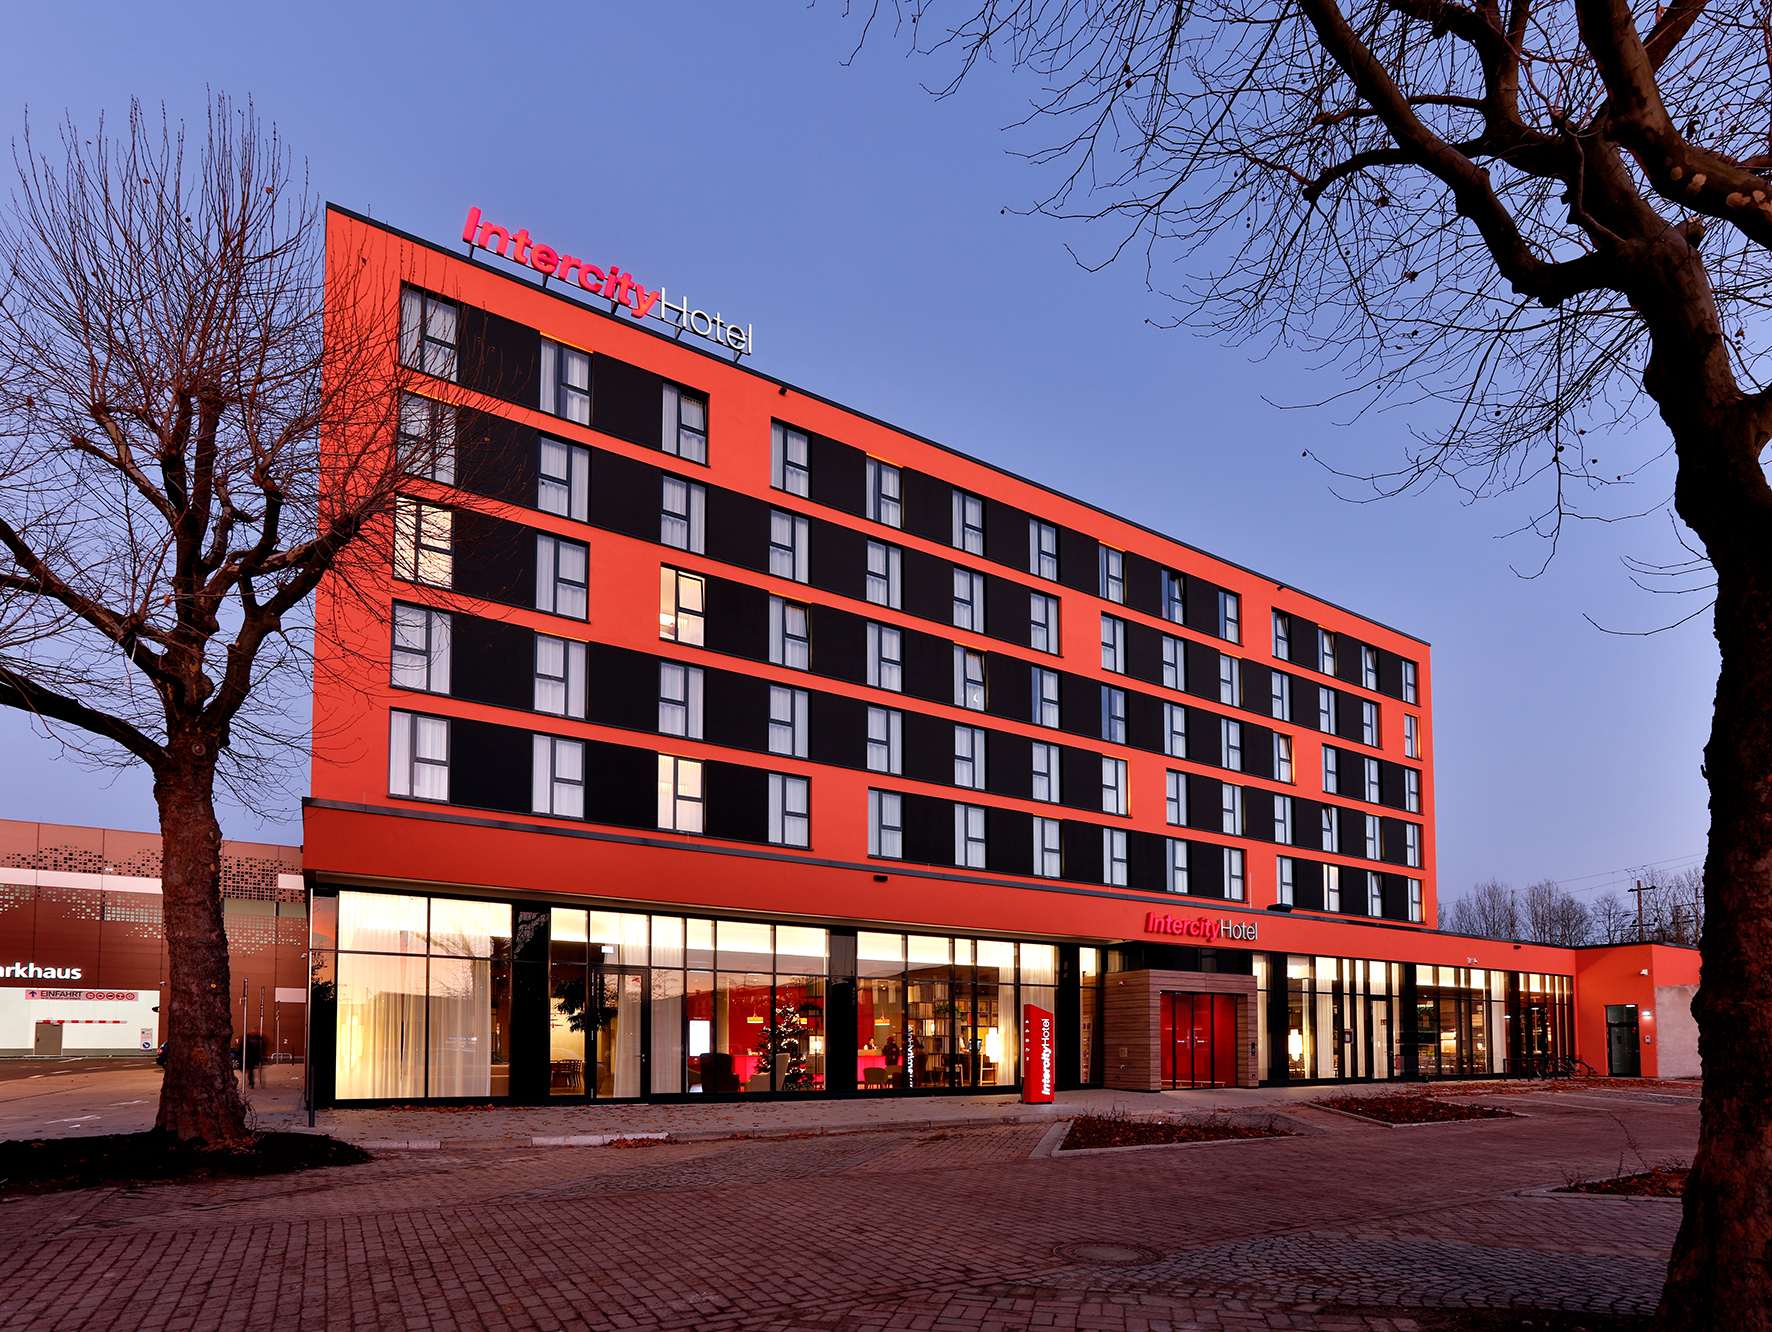 Das IntercityHotel Braunschweig ist eines von inzwischen 42 Hotels der gehobenen Mittelklasse, welche die IntercityHotel GmbH als Tochter der Frankfurter Steigenberger Hotels AG weltweit betreibt.